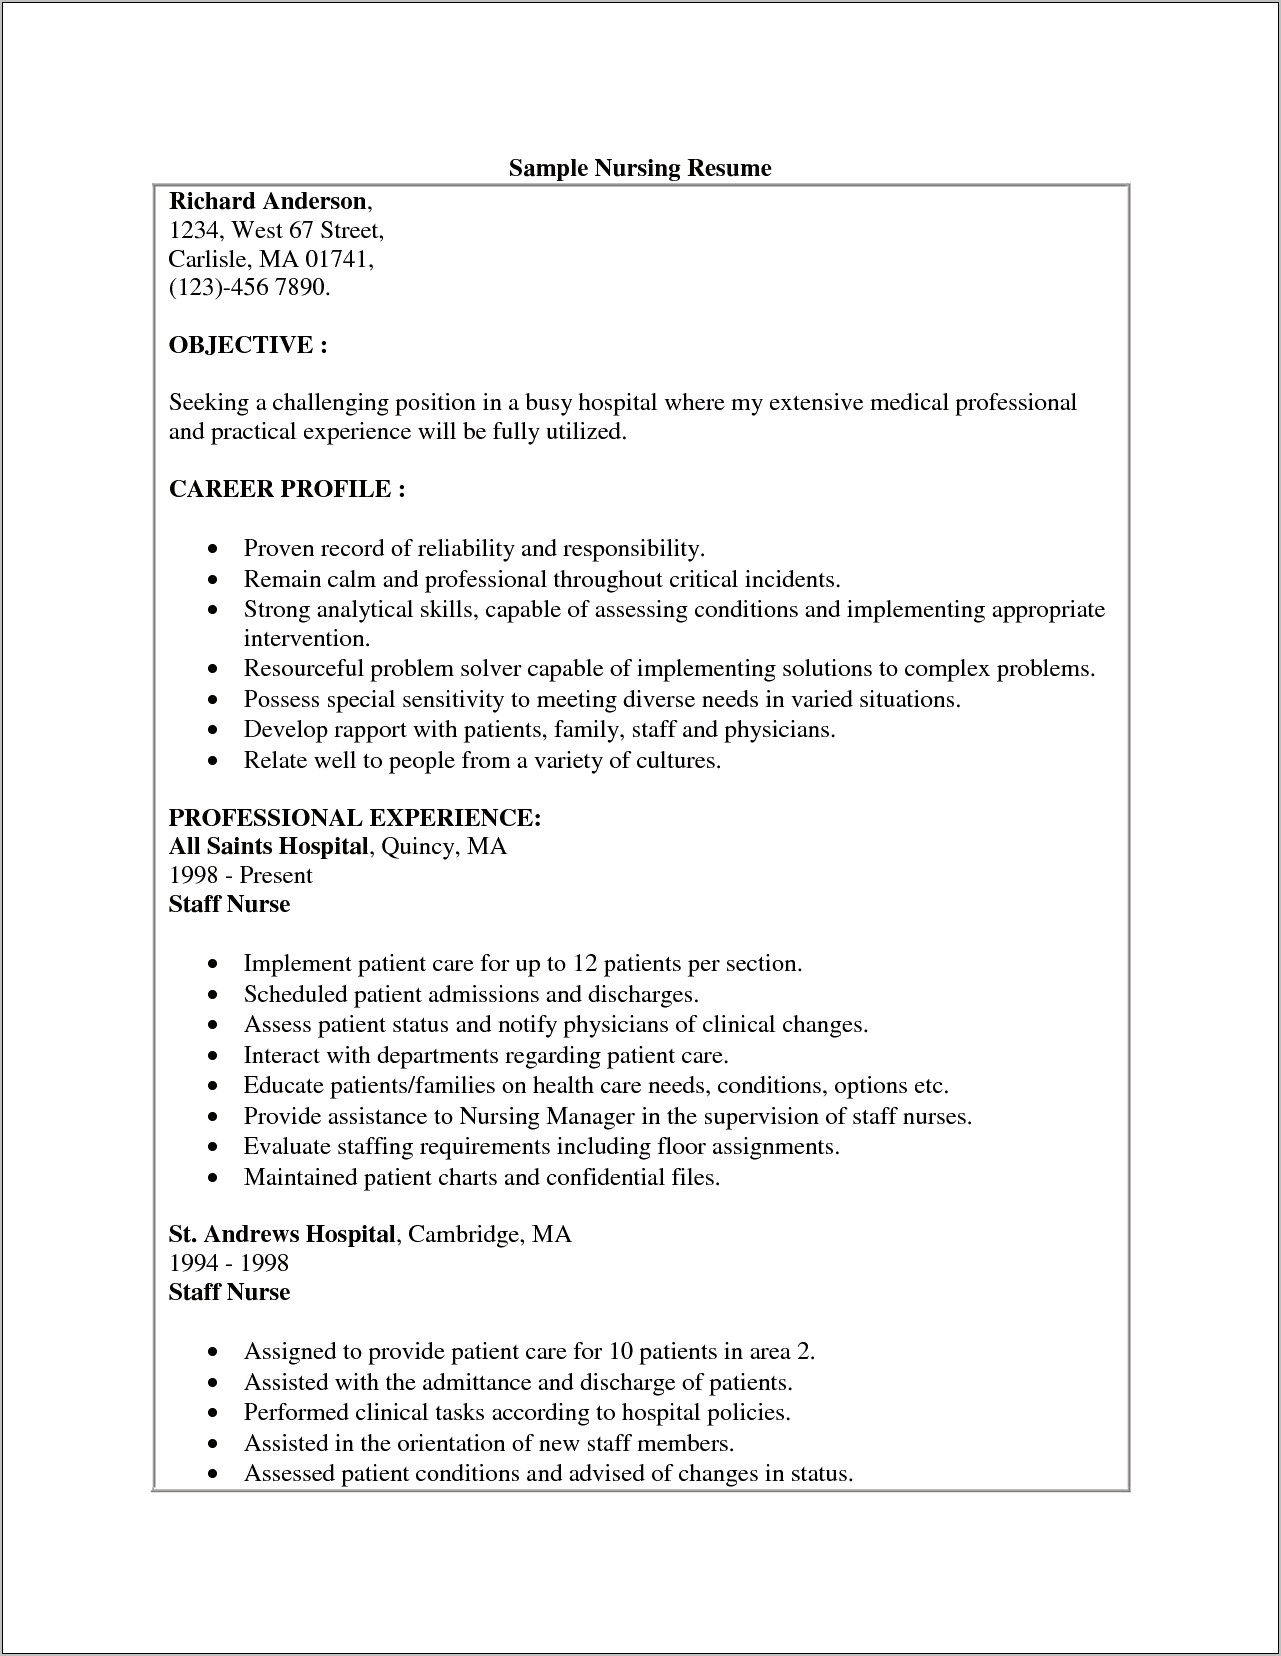 Sample Resume For Nursing Attendant